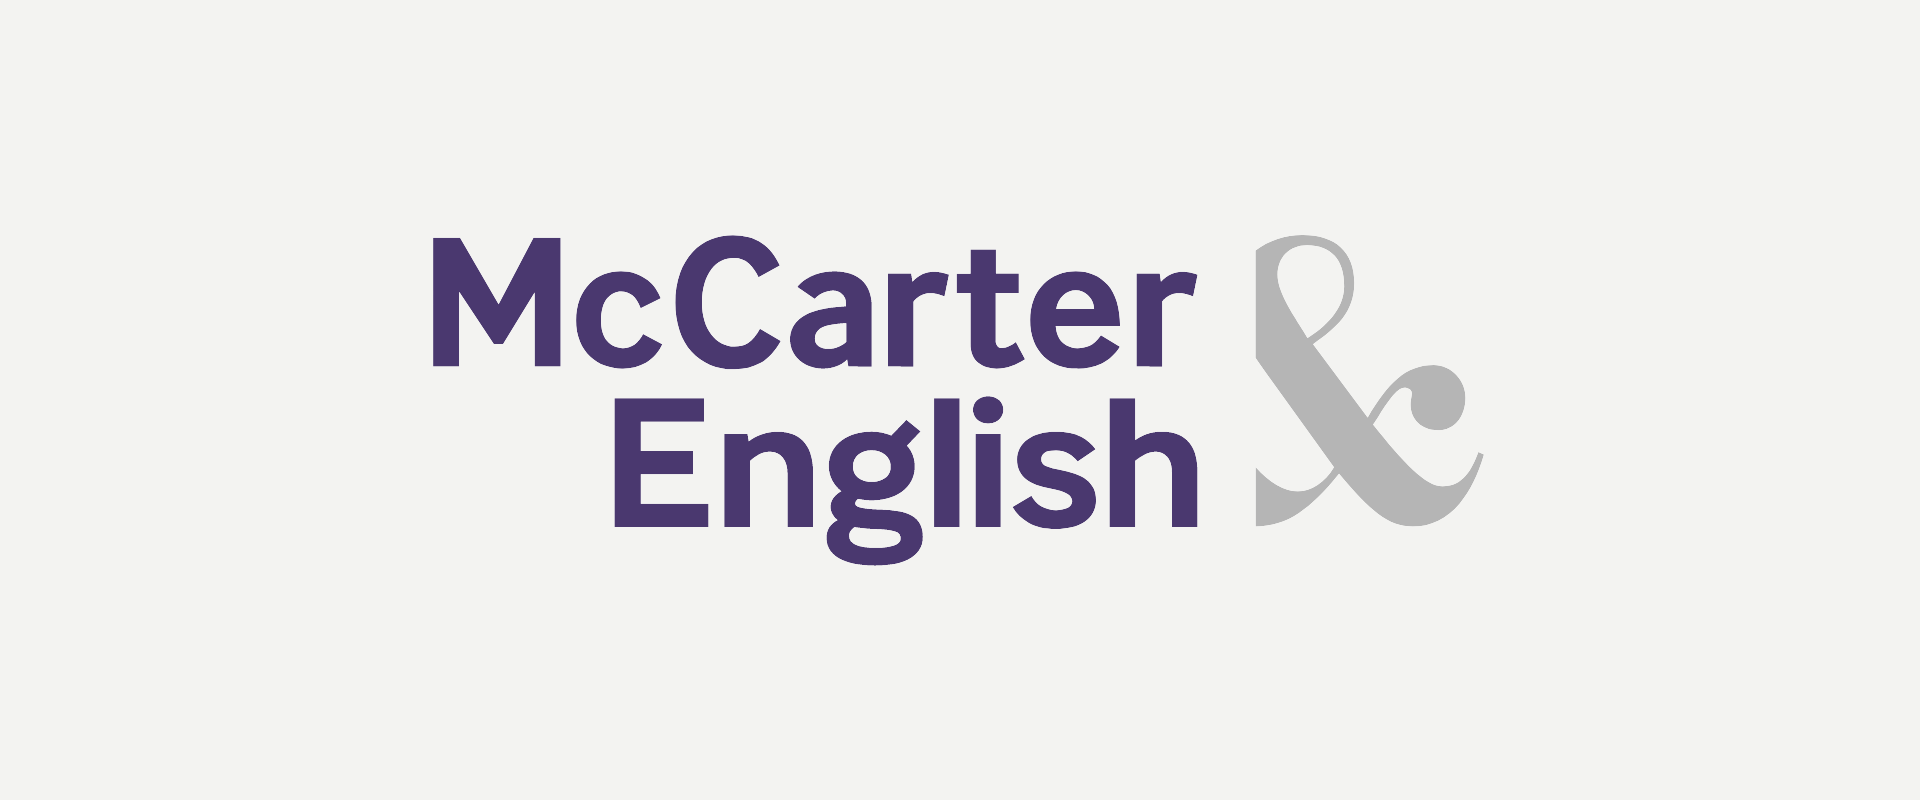 Media item displaying McCarter & English